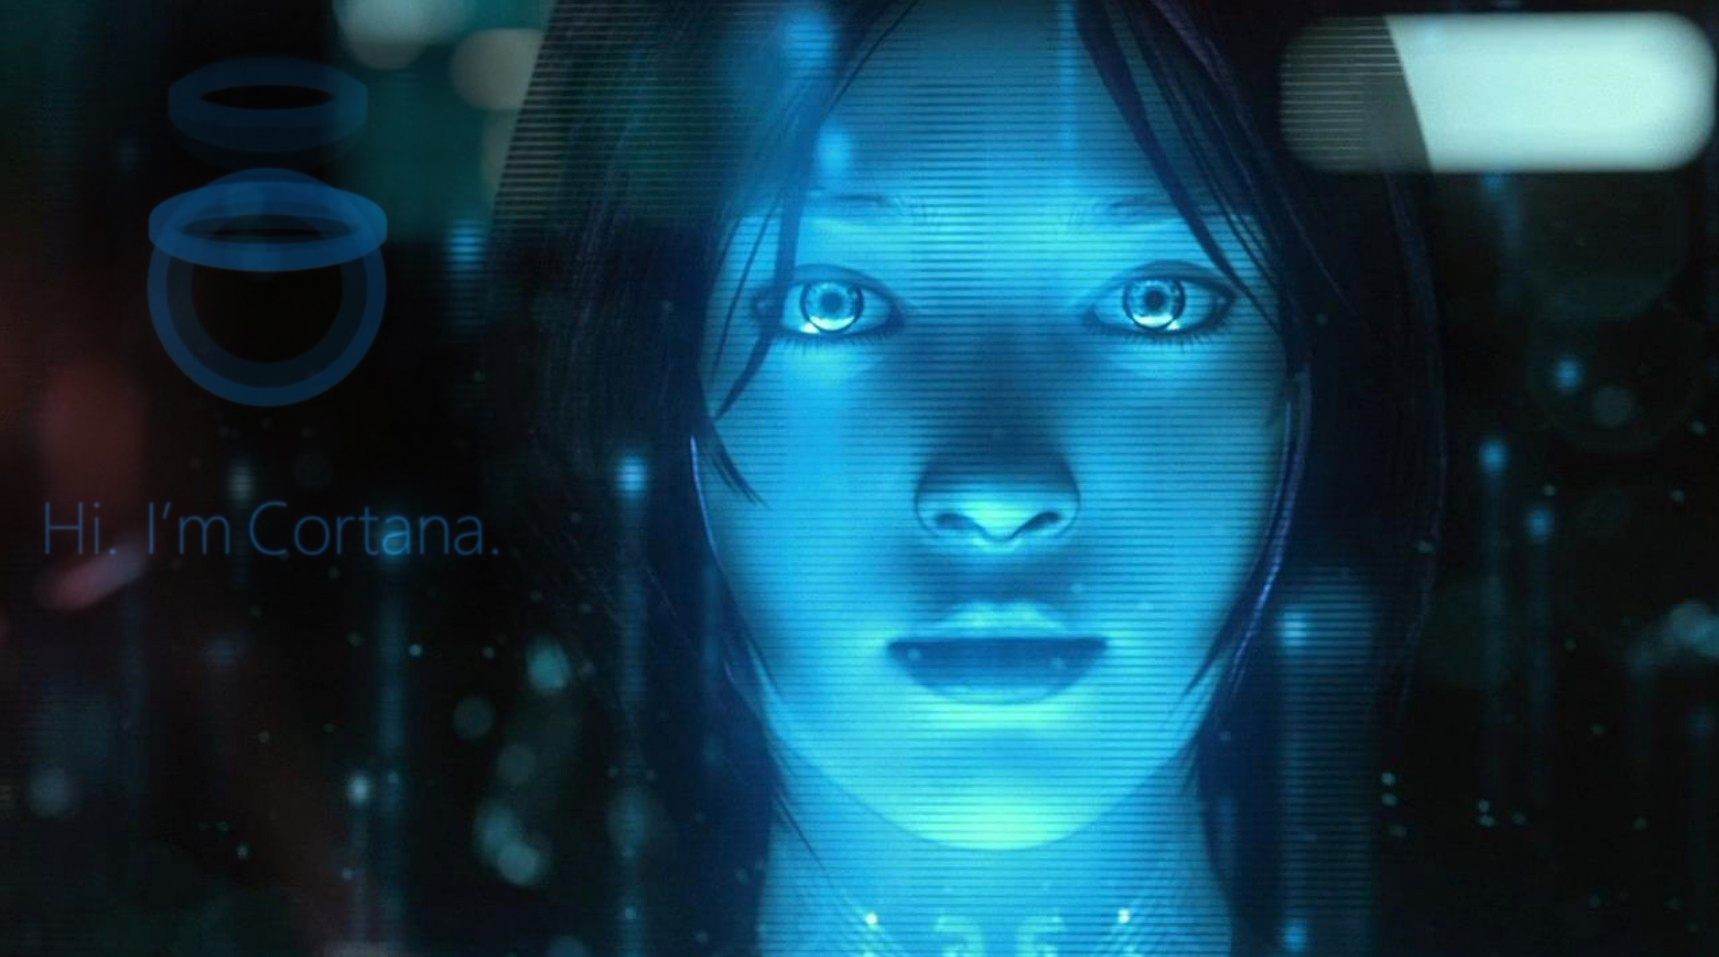 รู้จักกับ Cortana ปัญญาประดิษฐ์ที่มากับ Window Phone 8.1